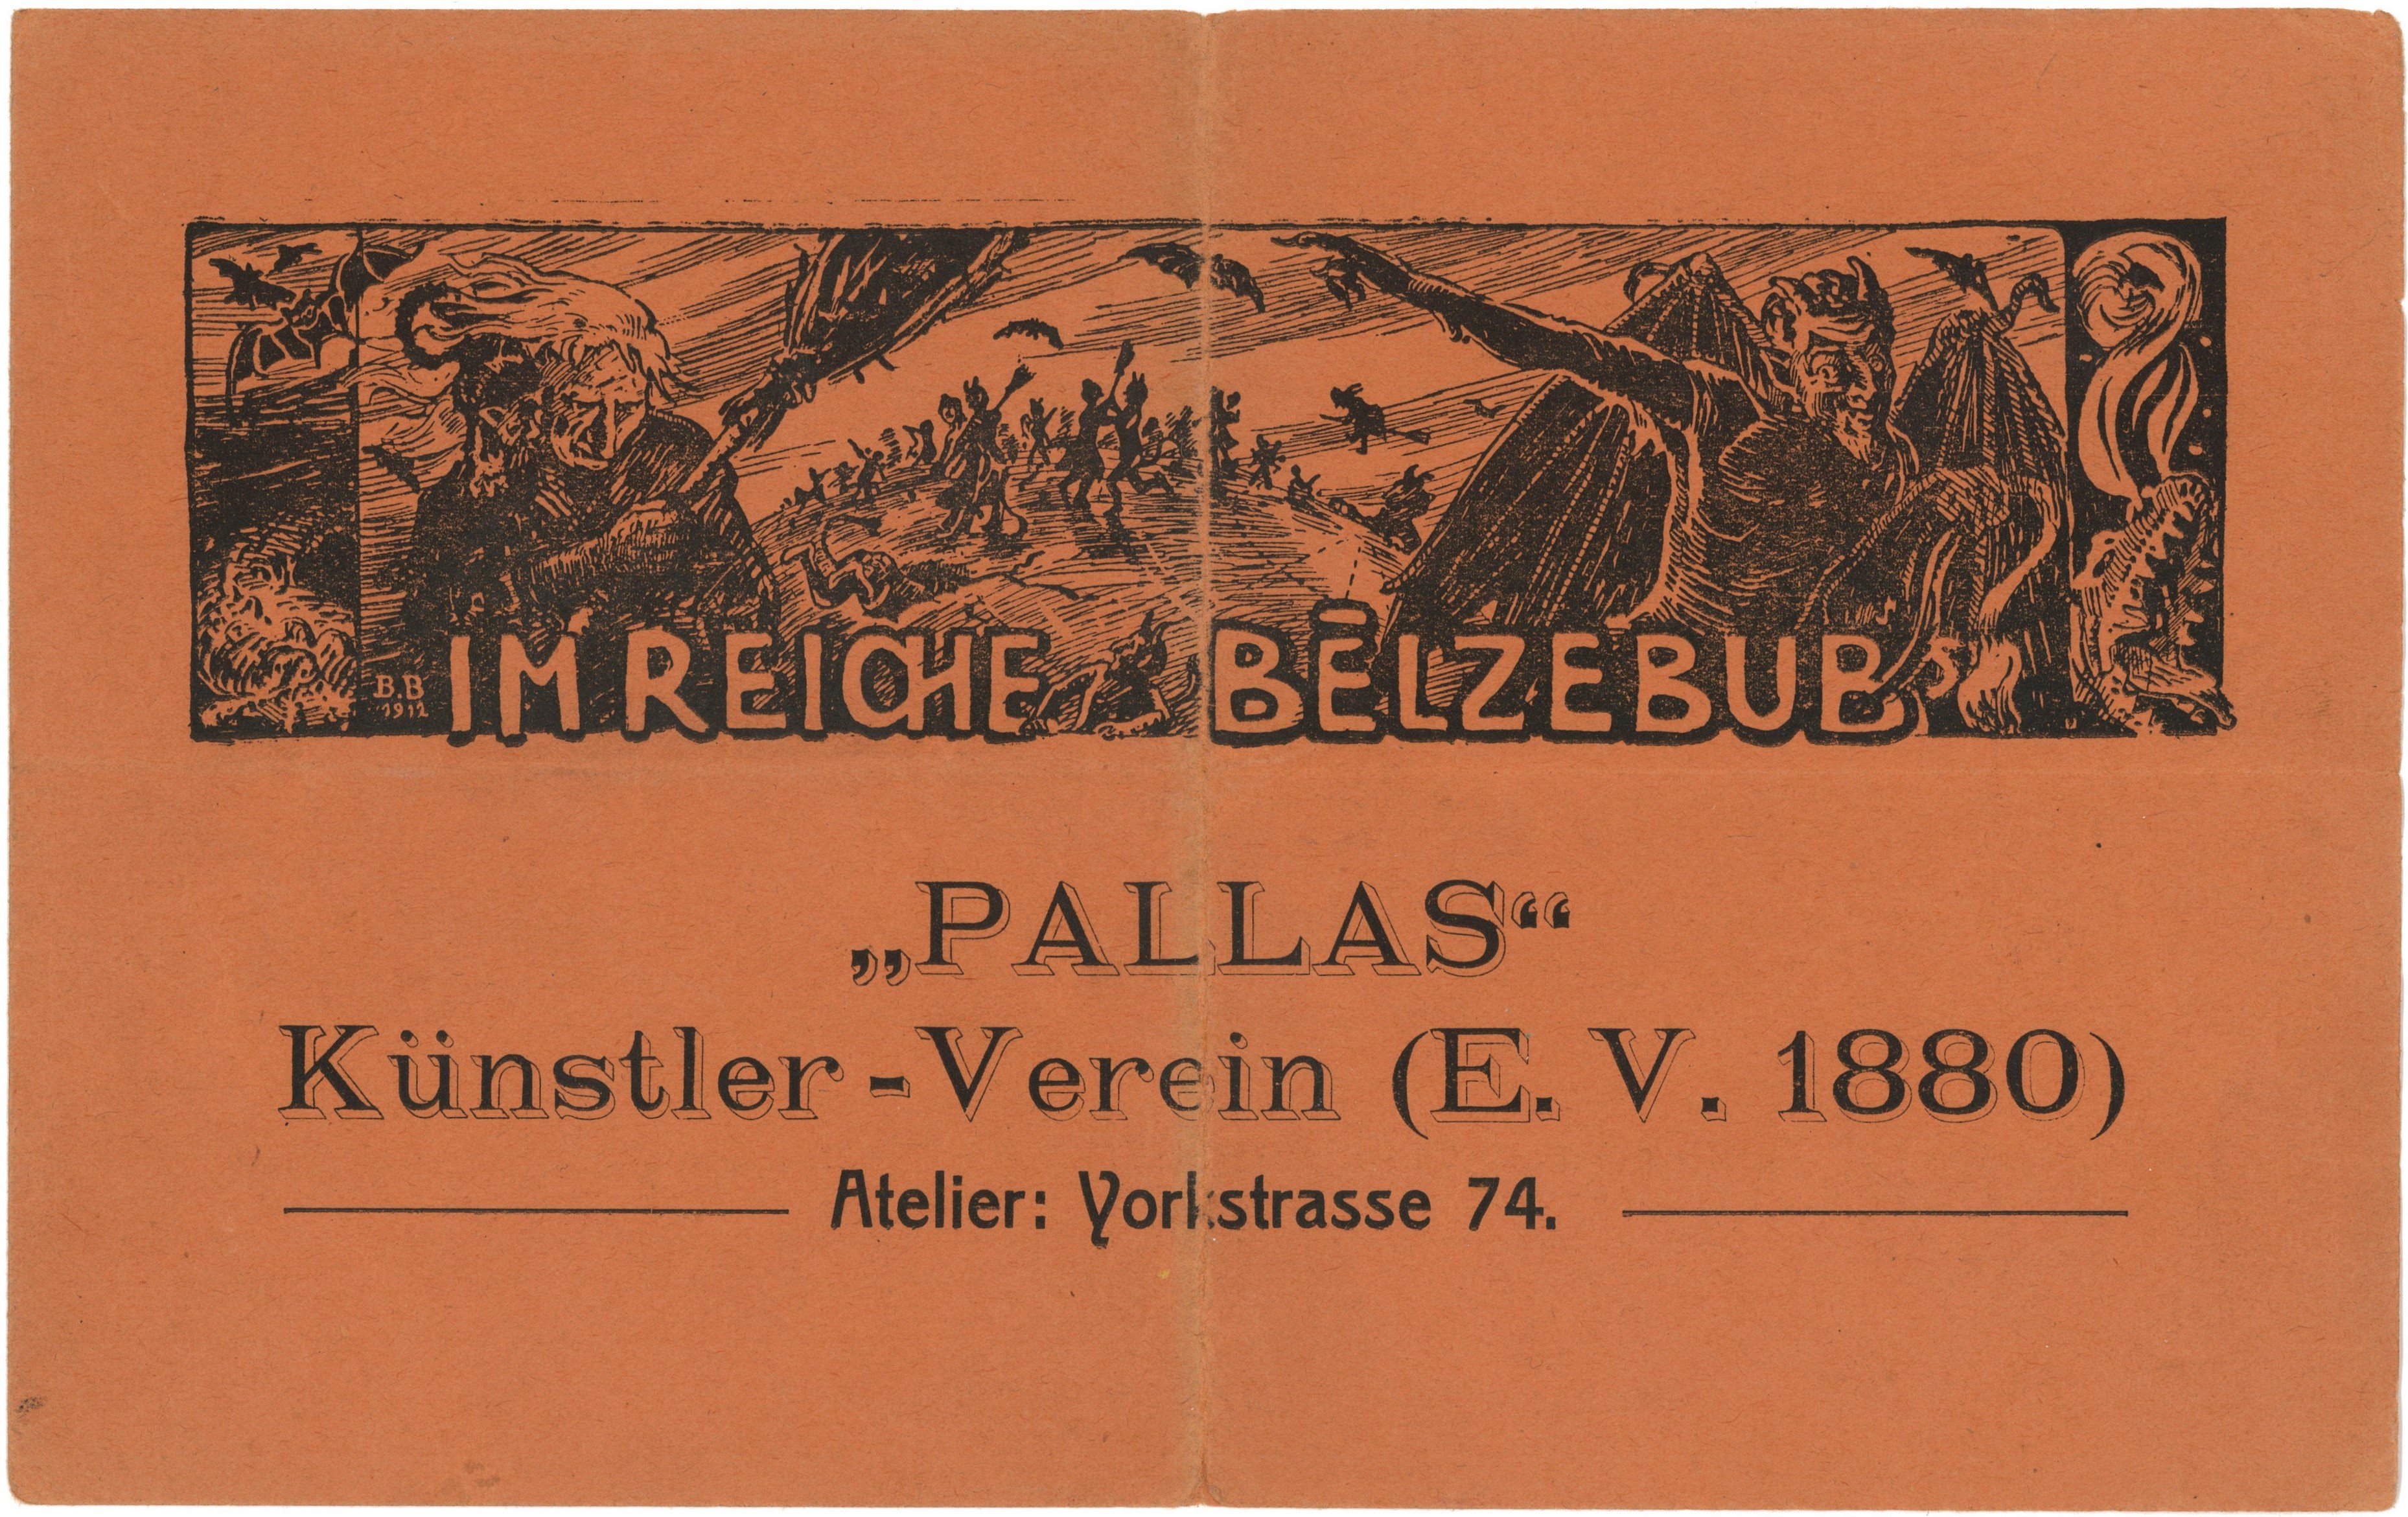 Einladung des Künstler-Vereins "Pallas" in Berlin zu einem Fest 1912 (Landesgeschichtliche Vereinigung für die Mark Brandenburg e.V., Archiv CC BY)